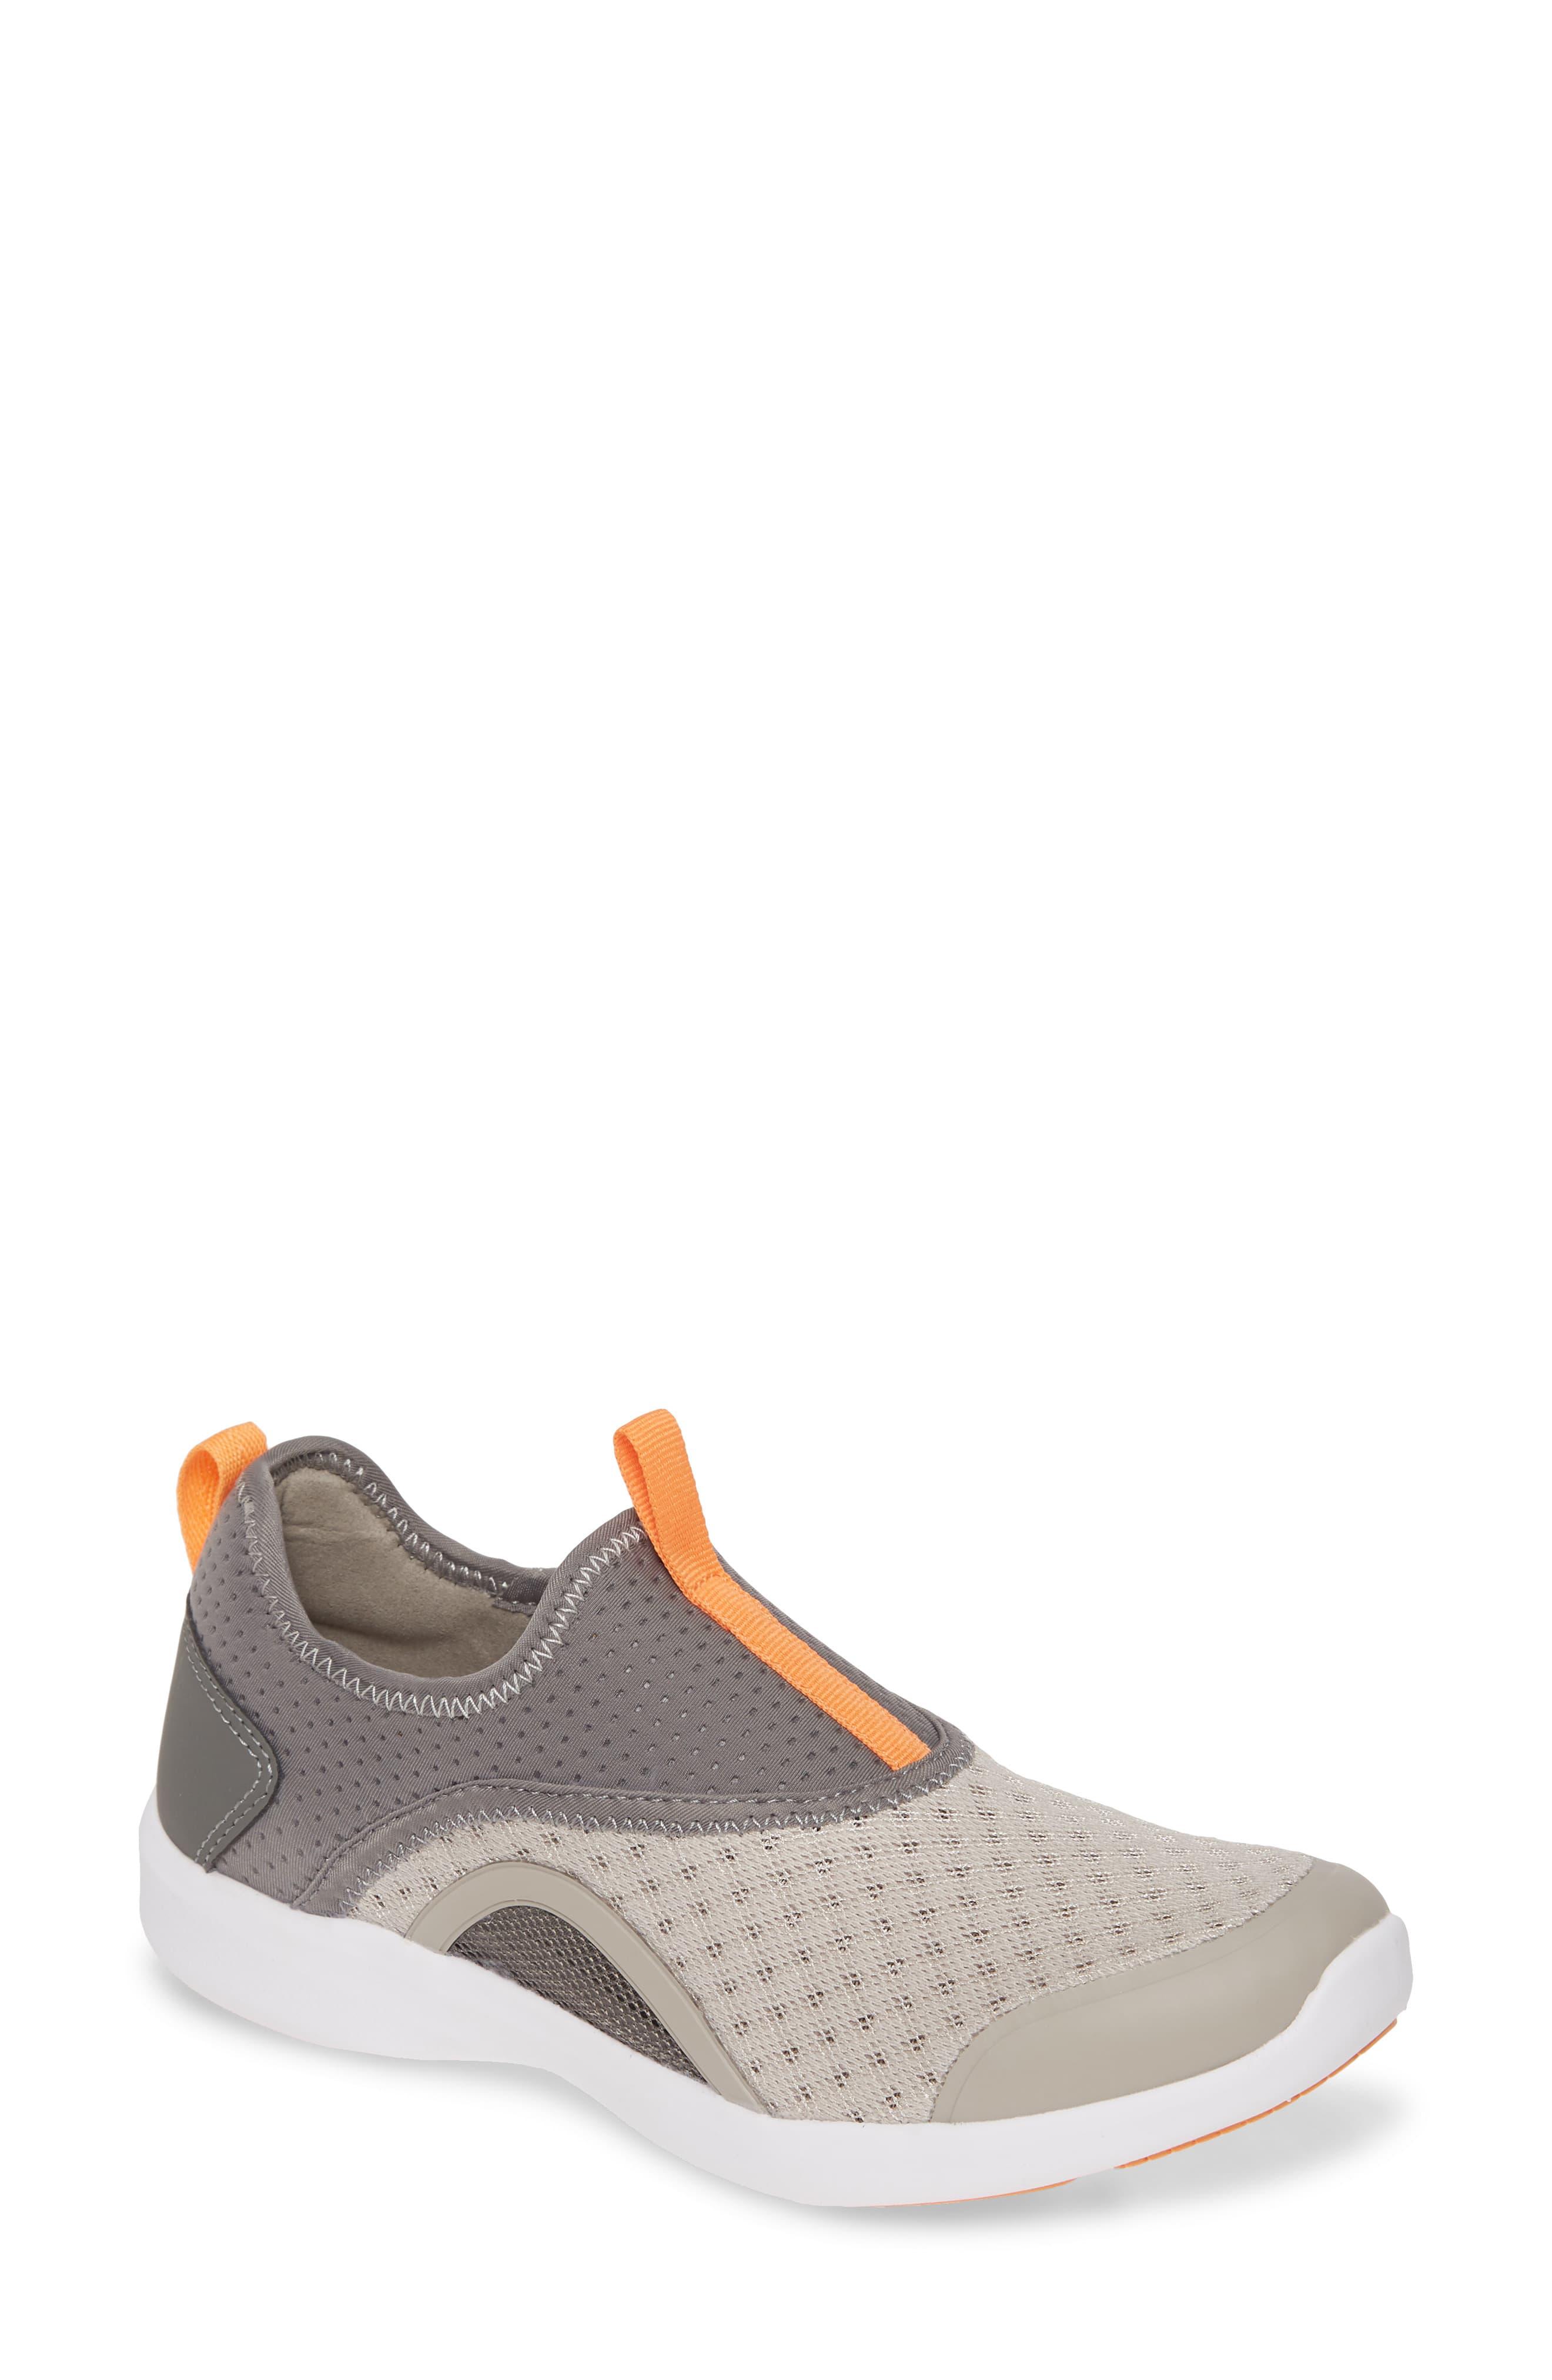 Vionic Rubber Yvonne Sneaker in Grey (Gray) - Lyst